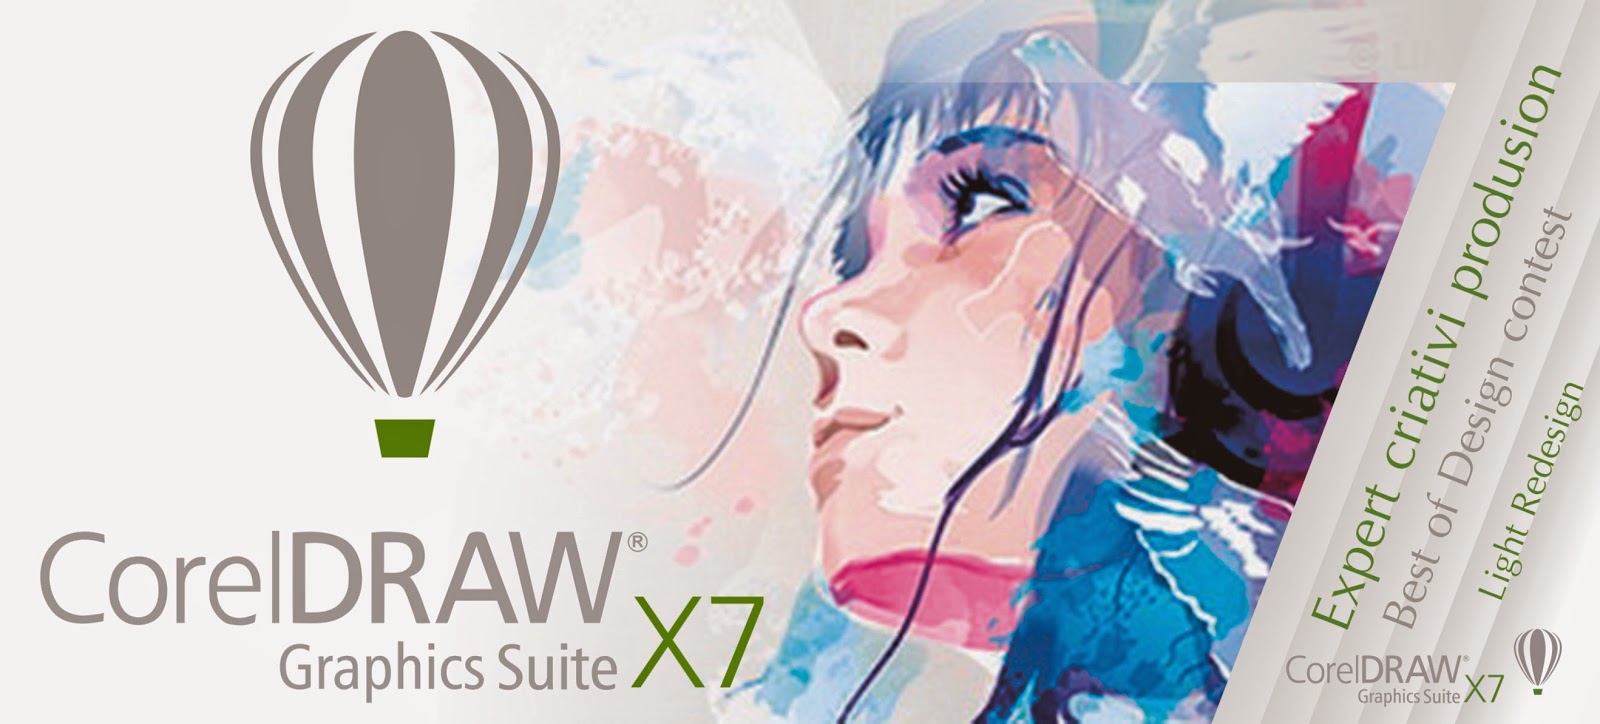 Download Free CorelDRAW Graphics Suite X7 ~ Novans